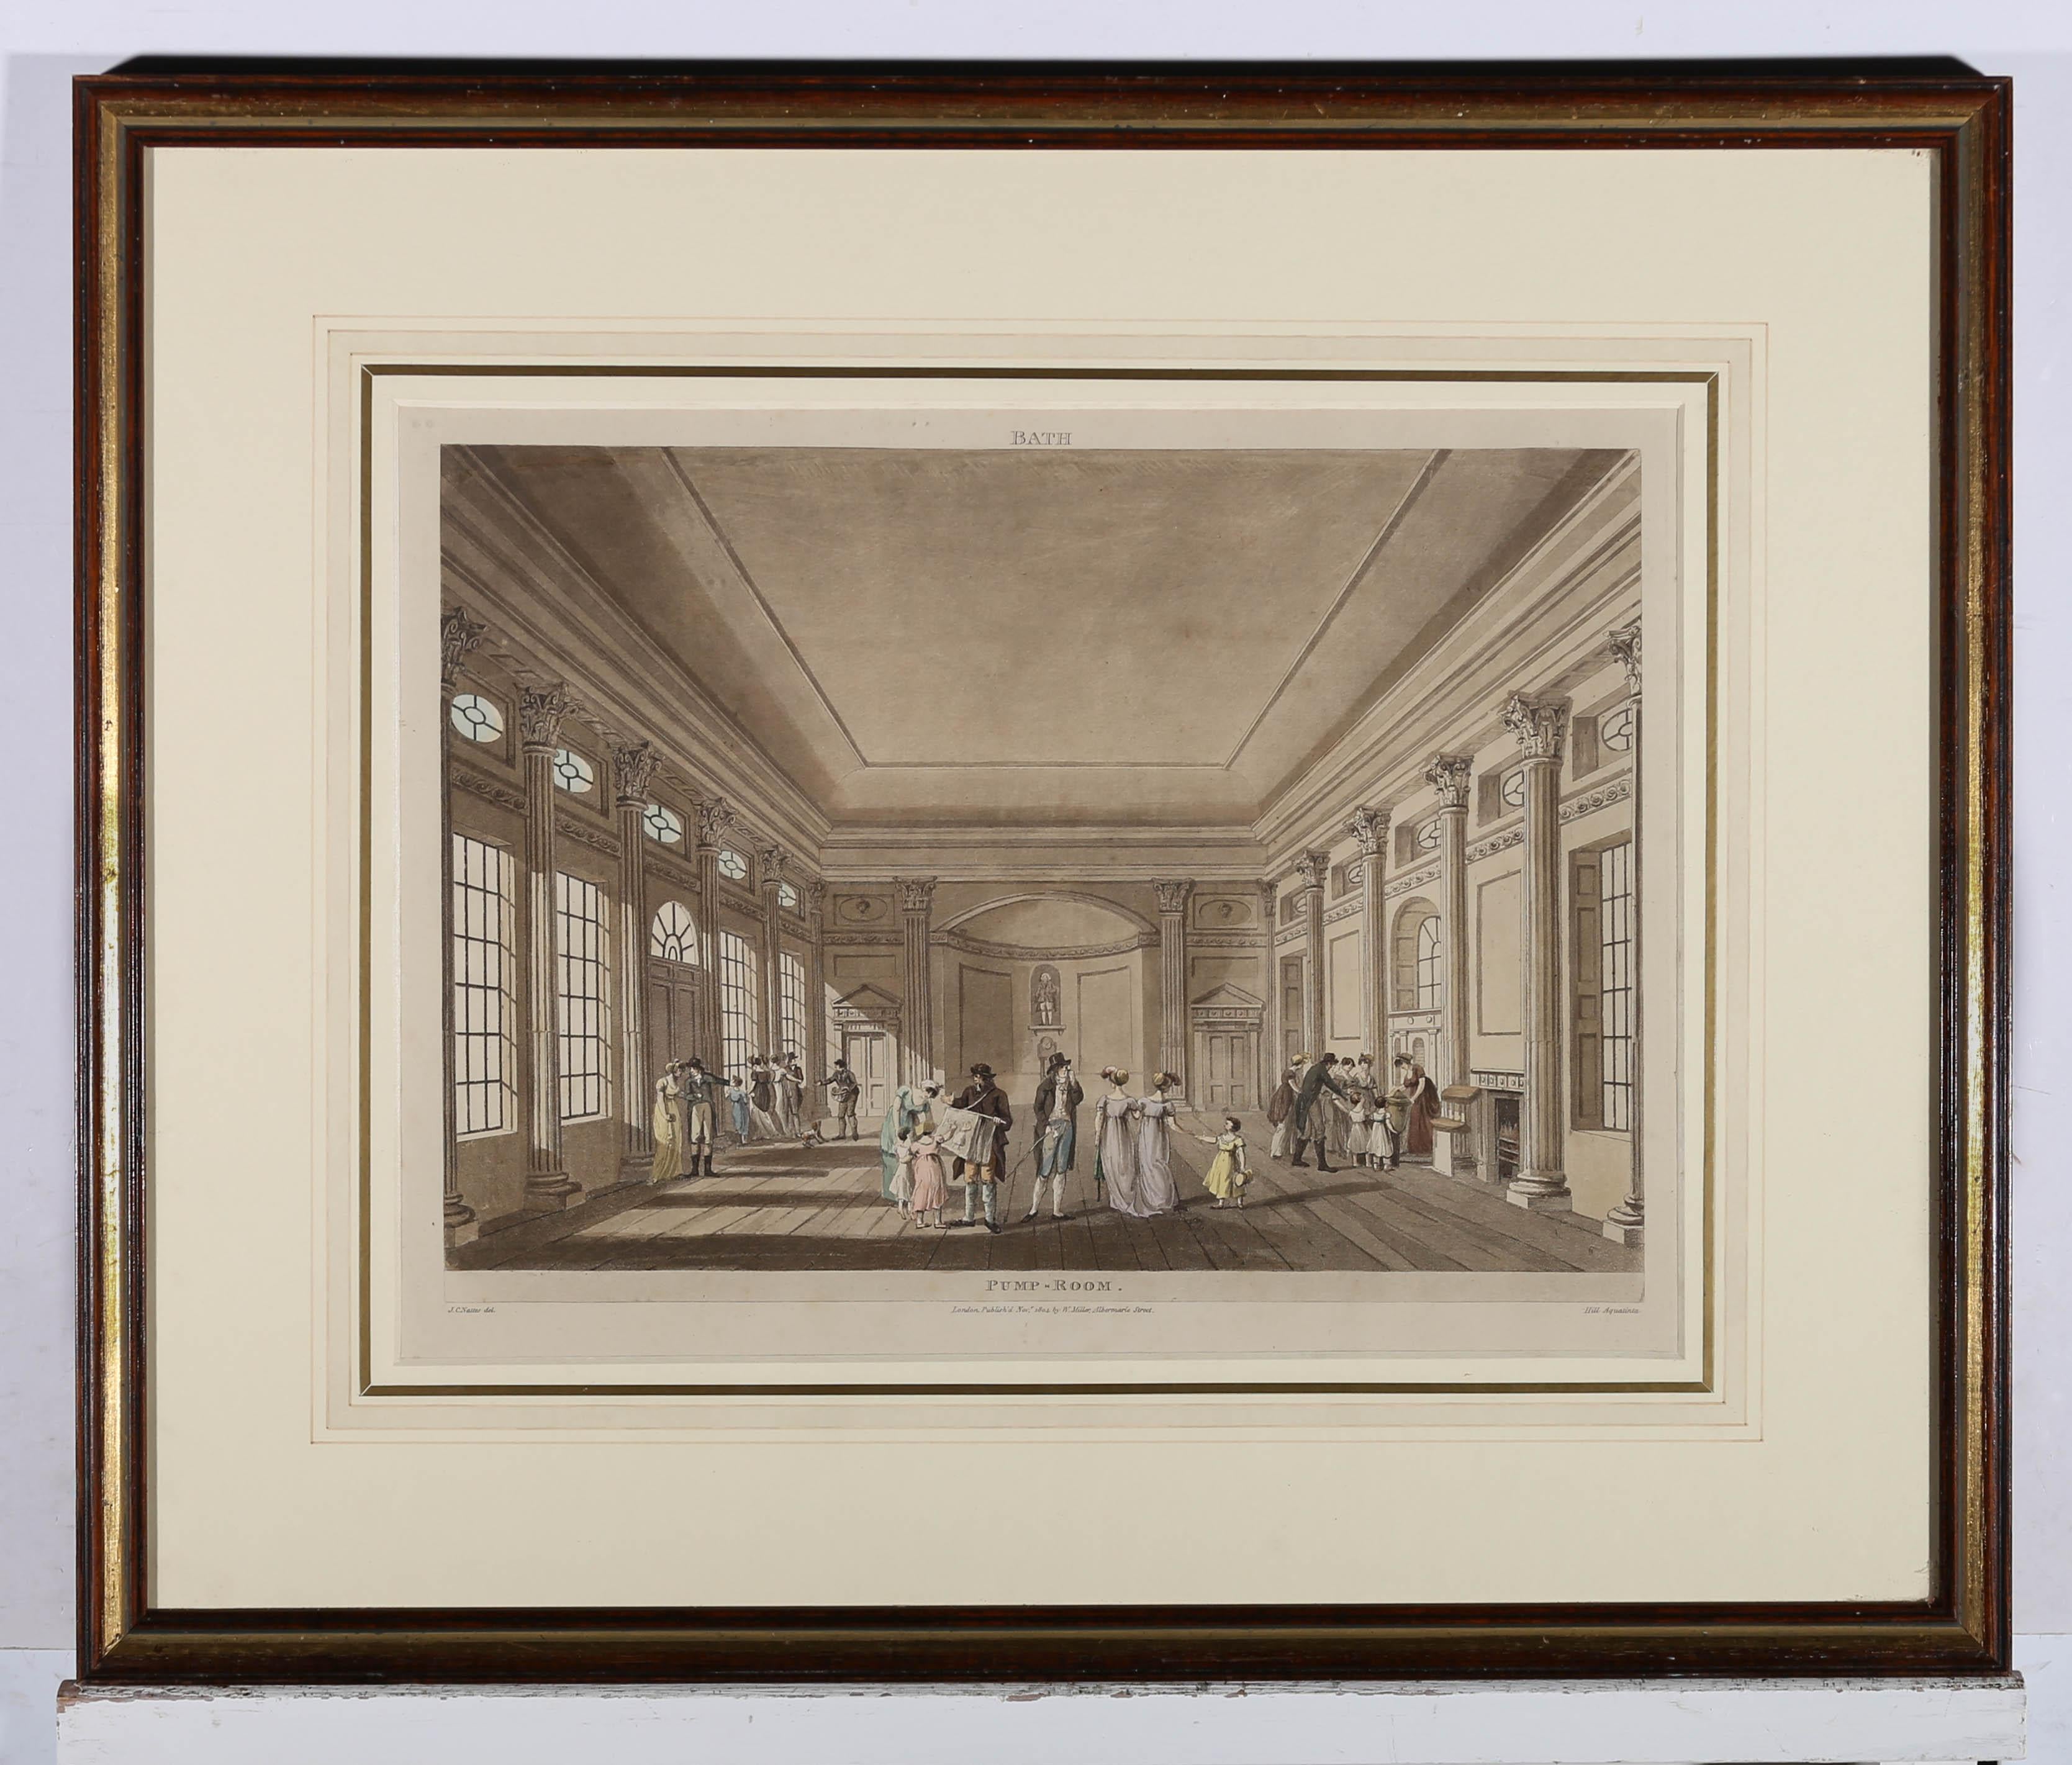 Eine feine Aquatinta mit Handkolorit, die den Pump Room, Bath, von John Hill nach John Claude Nattes (ca. 1765-1839) darstellt. Veröffentlicht im Jahr 1804 von W. Miller. Präsentiert in einem Passepartout mit vergoldetem Fensterrahmen und verglastem